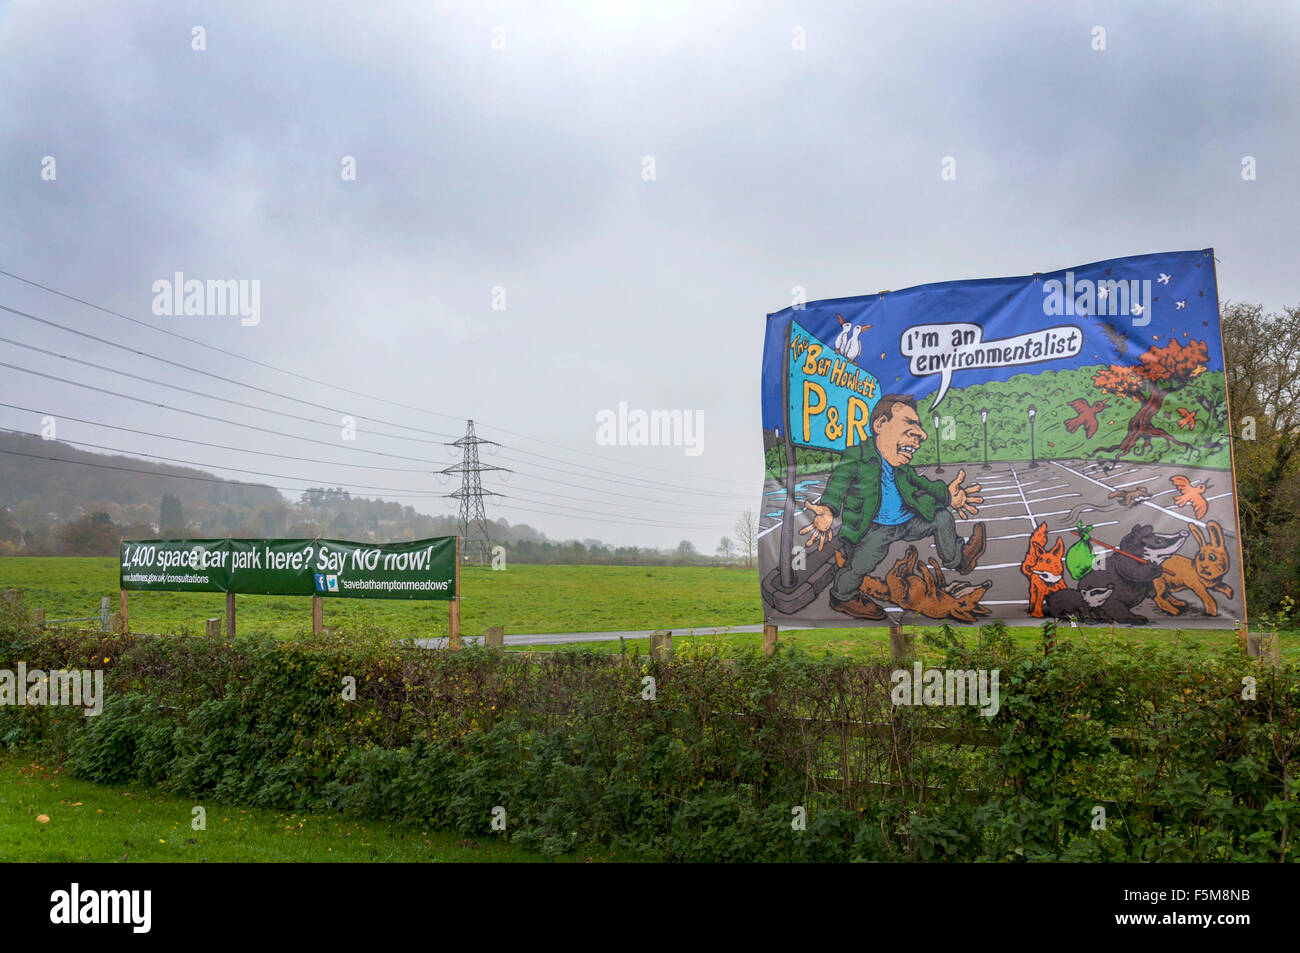 Bathampton, Bath, Somerset, UK. 6. November 2015. Kampagne zu stoppen das potenzielle Gebäude von einem Park und ride Parkplatz auf alten Strandwiesen (im Hintergrund) in Bathampton in der Nähe von Bad unterzeichnet. Eine Karikatur (rechts) mokiert sich über lokale konservative MP Ben Howlett, die das Programm unterstützt. Bildnachweis: Richard Wayman/Alamy Live-Nachrichten Stockfoto